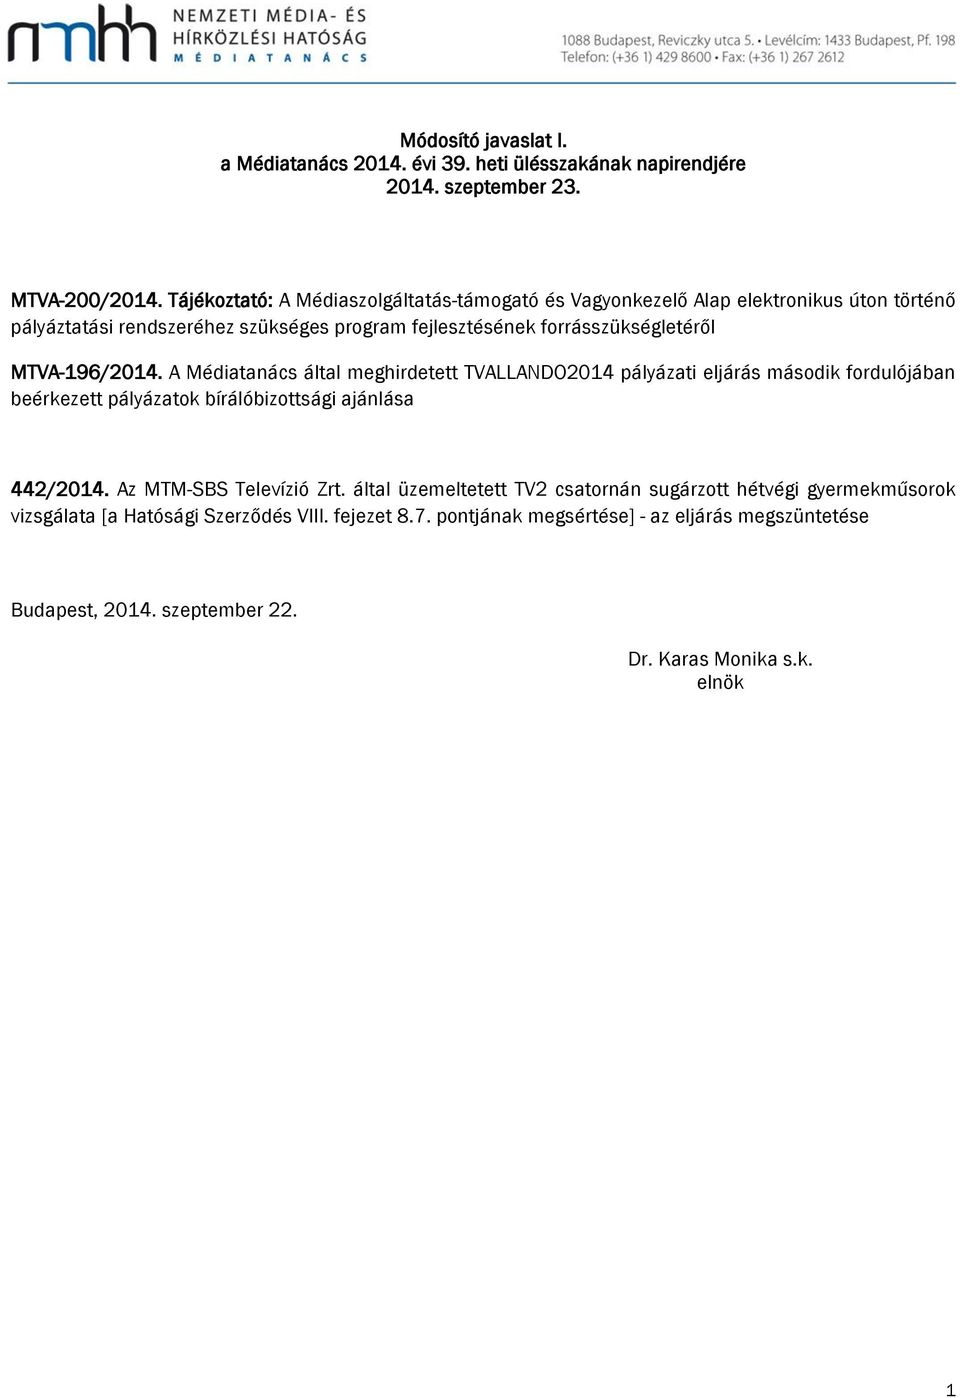 MTVA-196/2014. A Médiatanács által meghirdetett TVALLANDO2014 pályázati eljárás második fordulójában beérkezett pályázatok bírálóbizottsági ajánlása 442/2014.